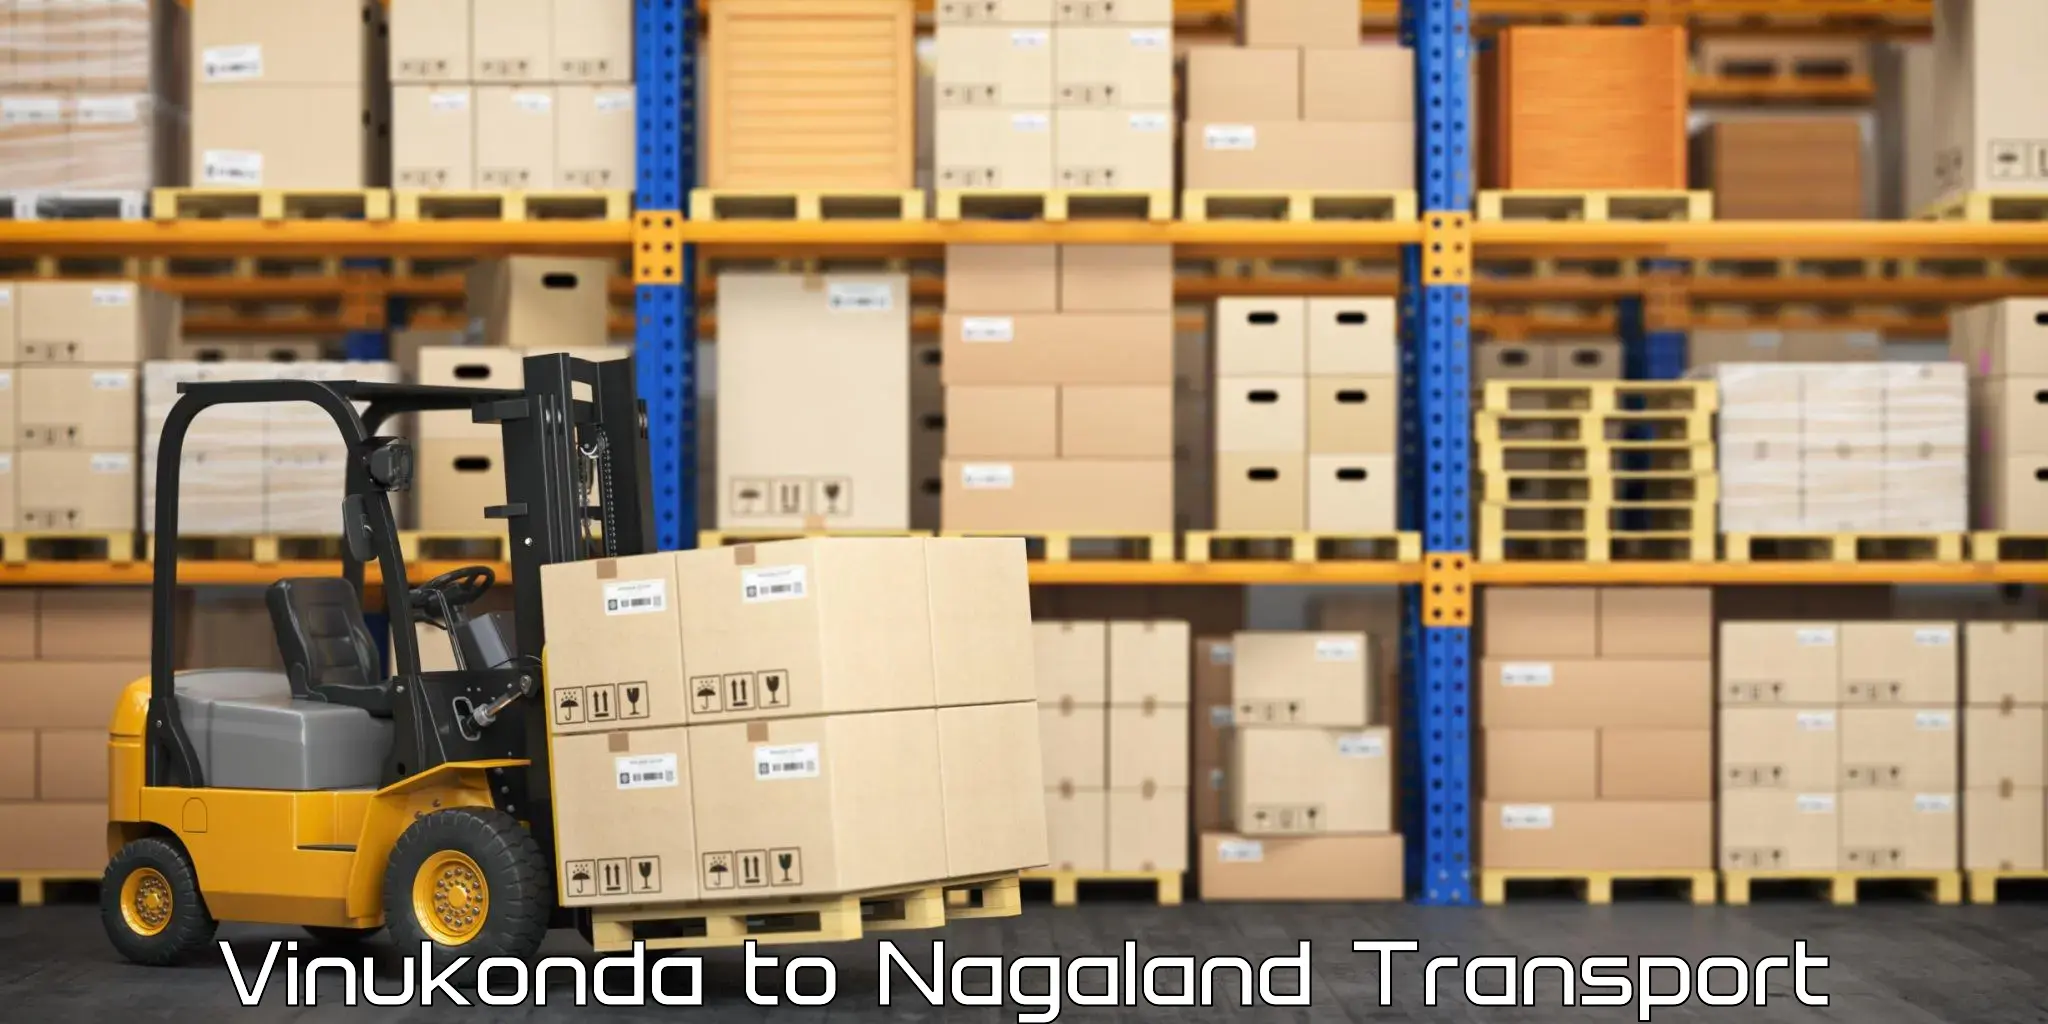 Road transport online services Vinukonda to Nagaland